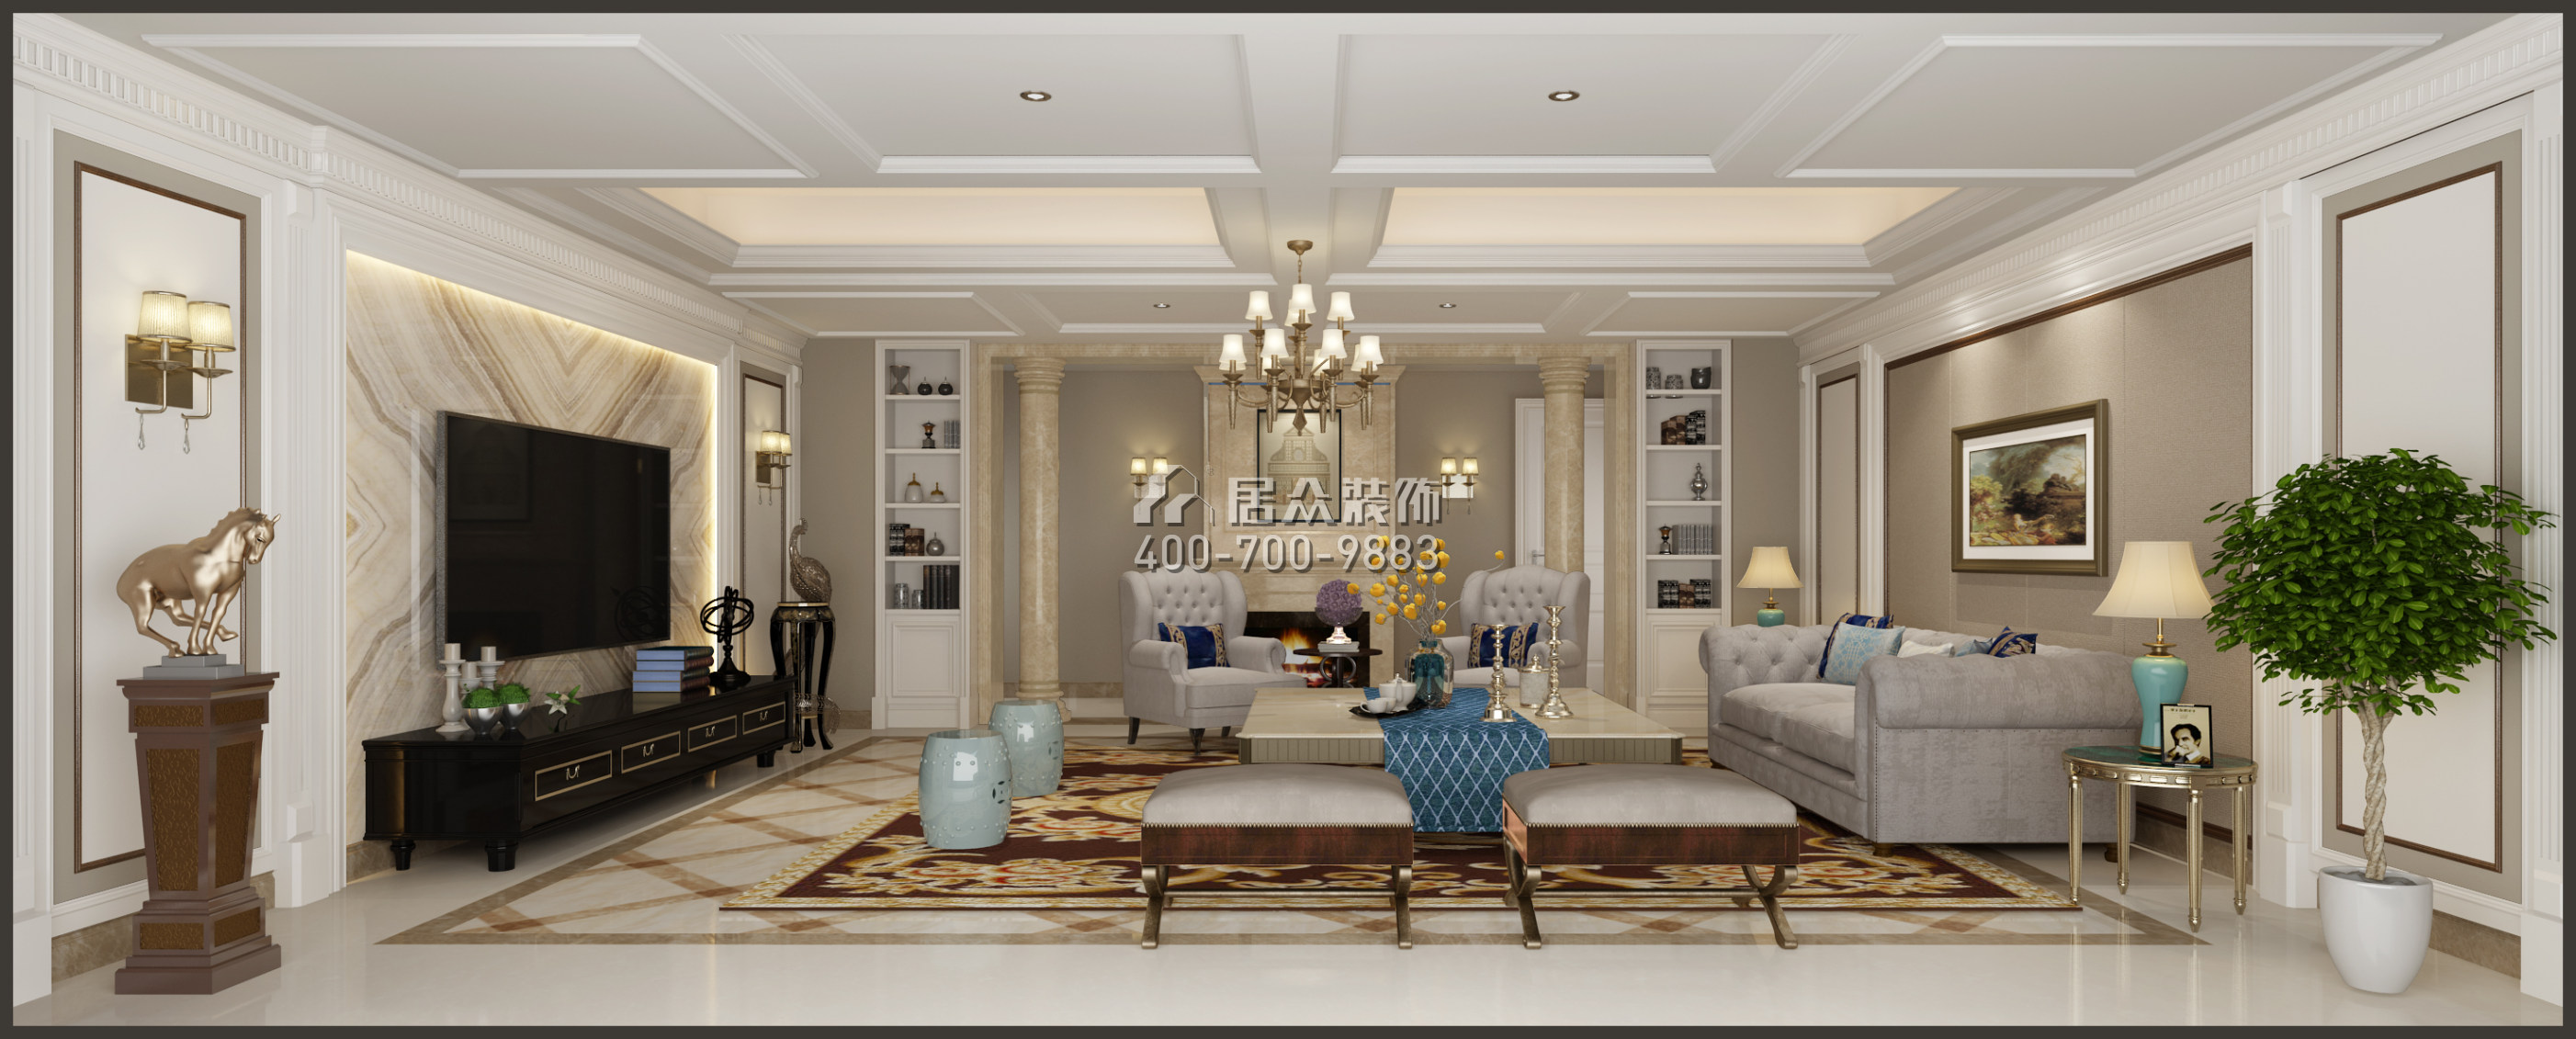 梅溪湖壹号380平方米美式风格平层户型客厅装修效果图